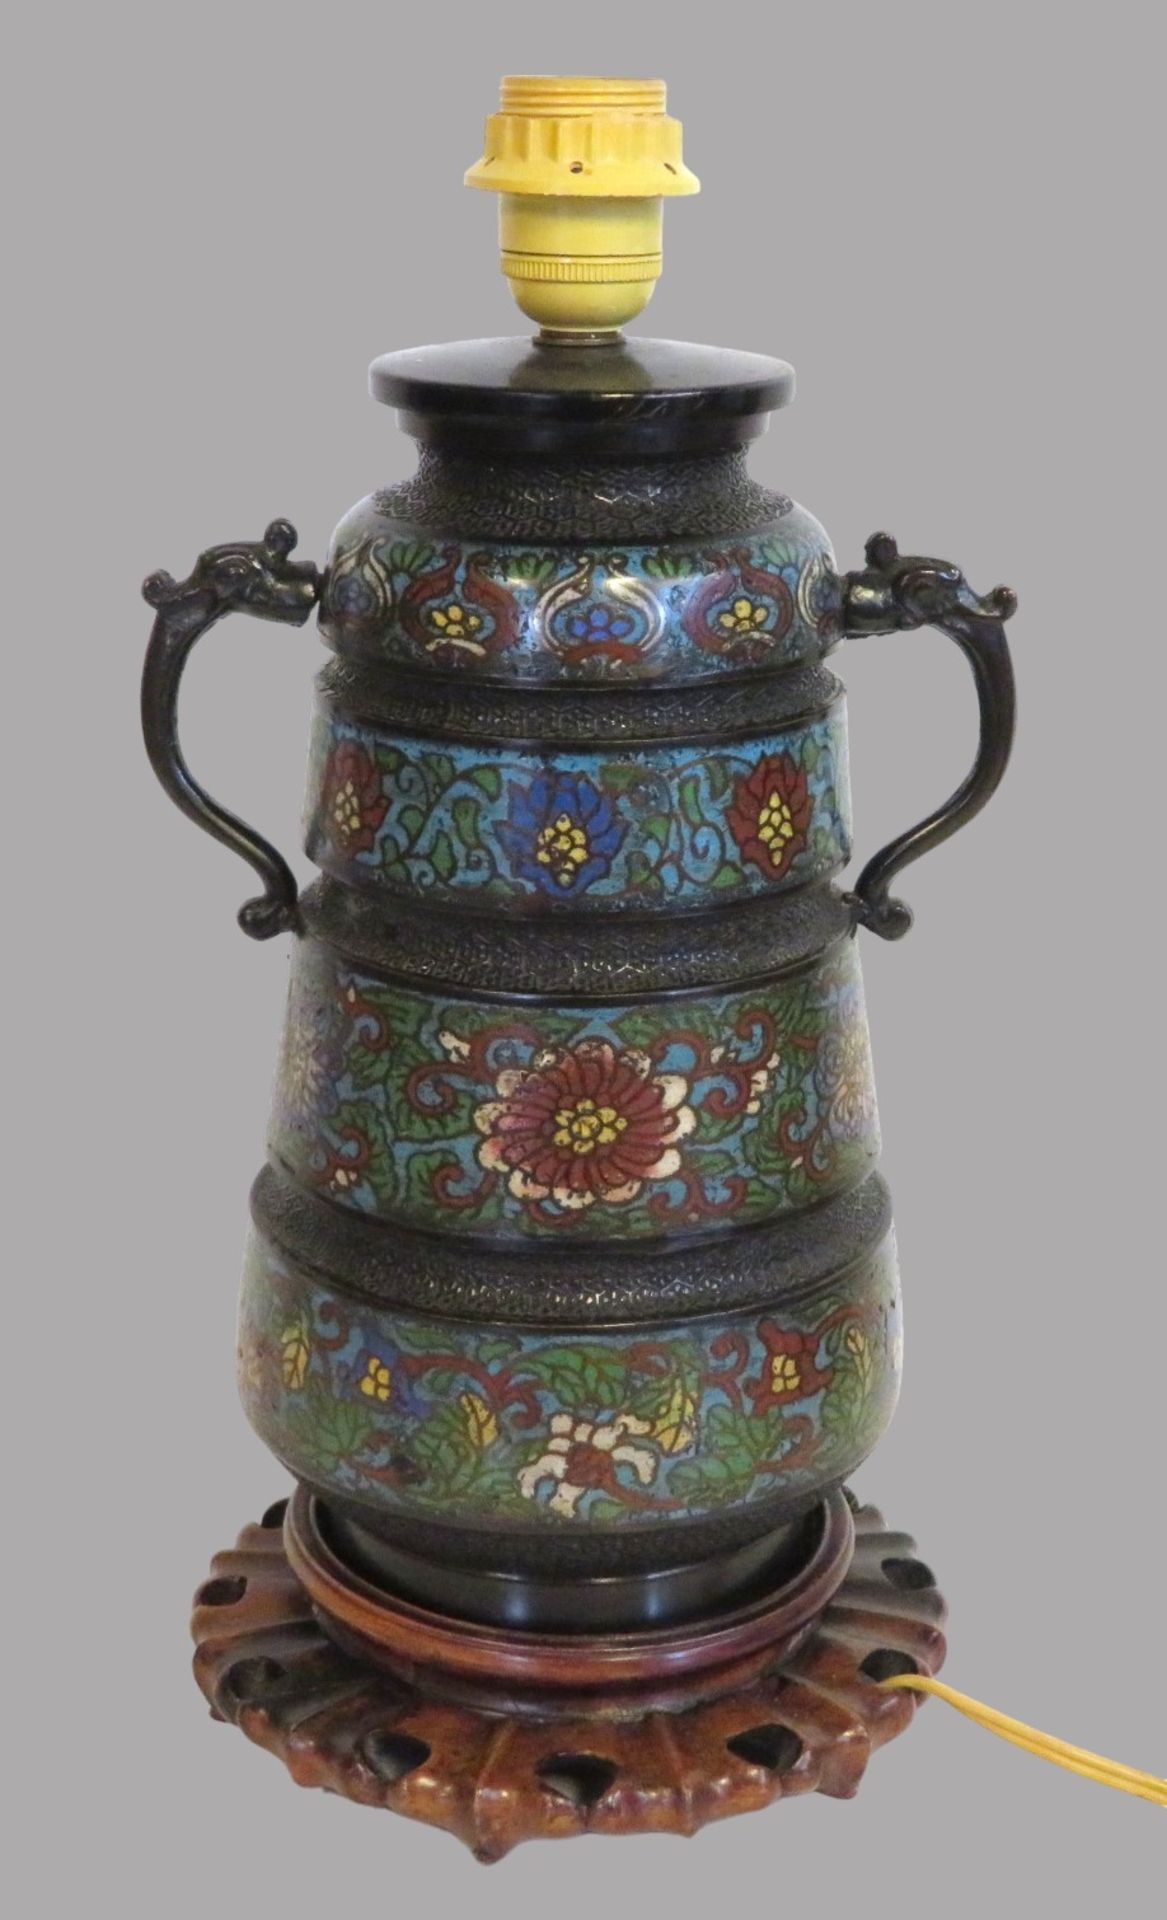 Dekorative Henkelvase, China, 19. Jahrhundert, Cloisonné, farbiger Zellenschmelz, seitliche Handhab - Bild 2 aus 3